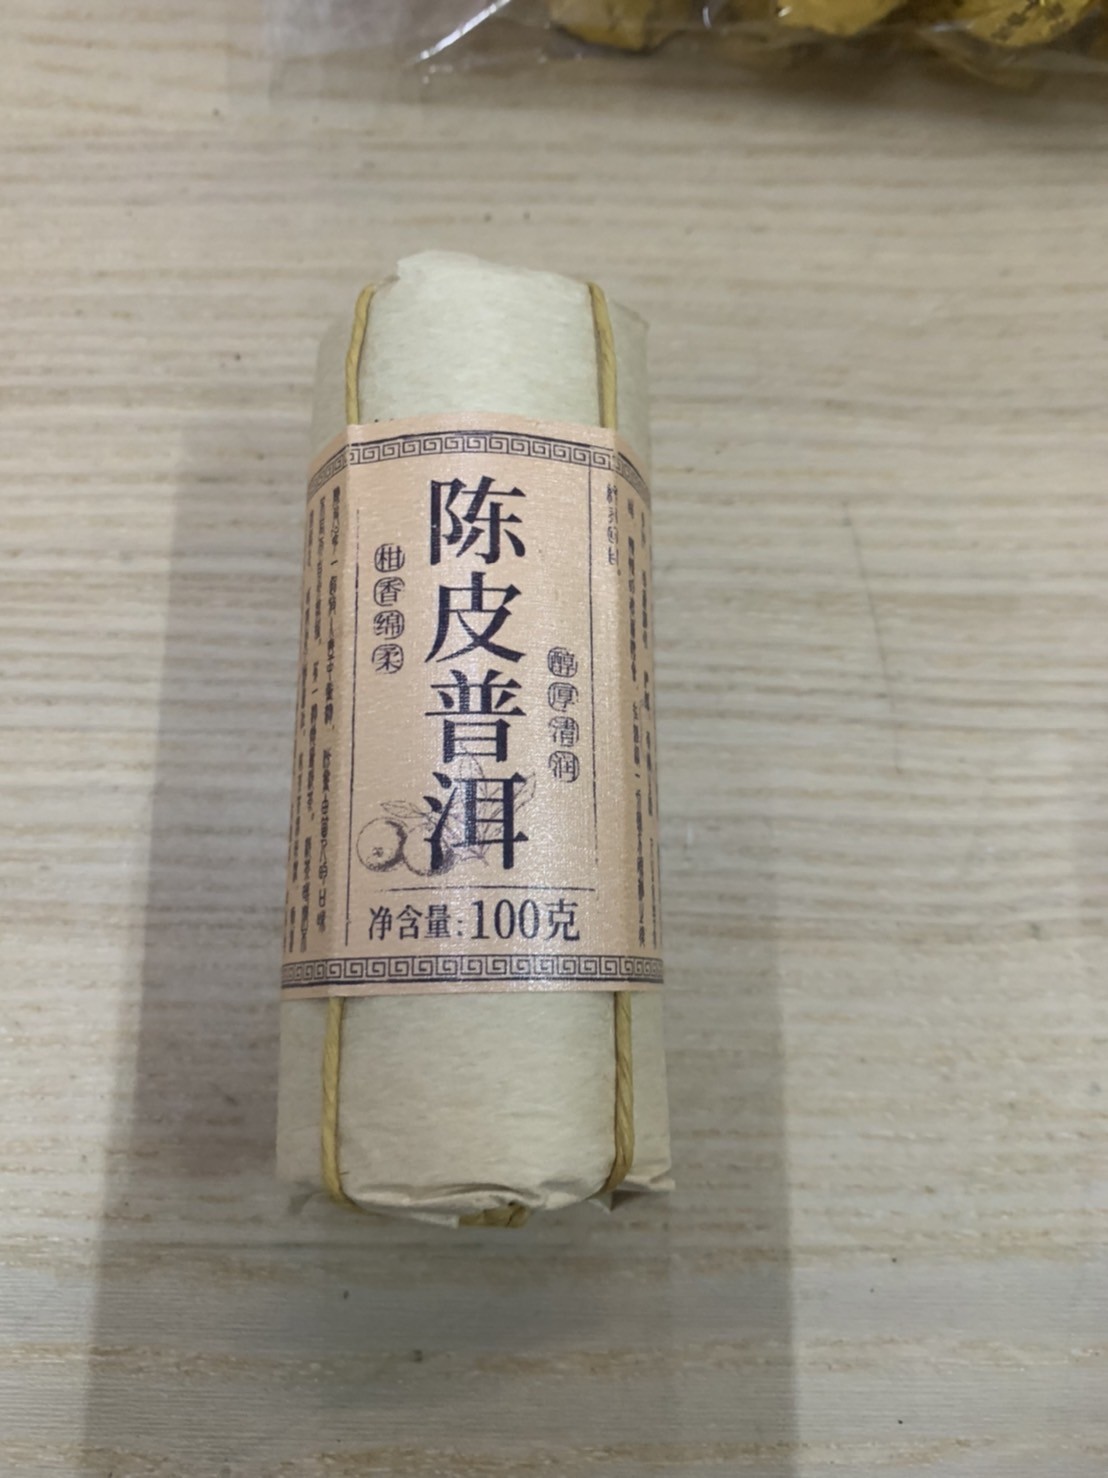 中國進口 歷史茗茶 每品100克 香氣四溢 送人品茗 過年過節 最佳選擇